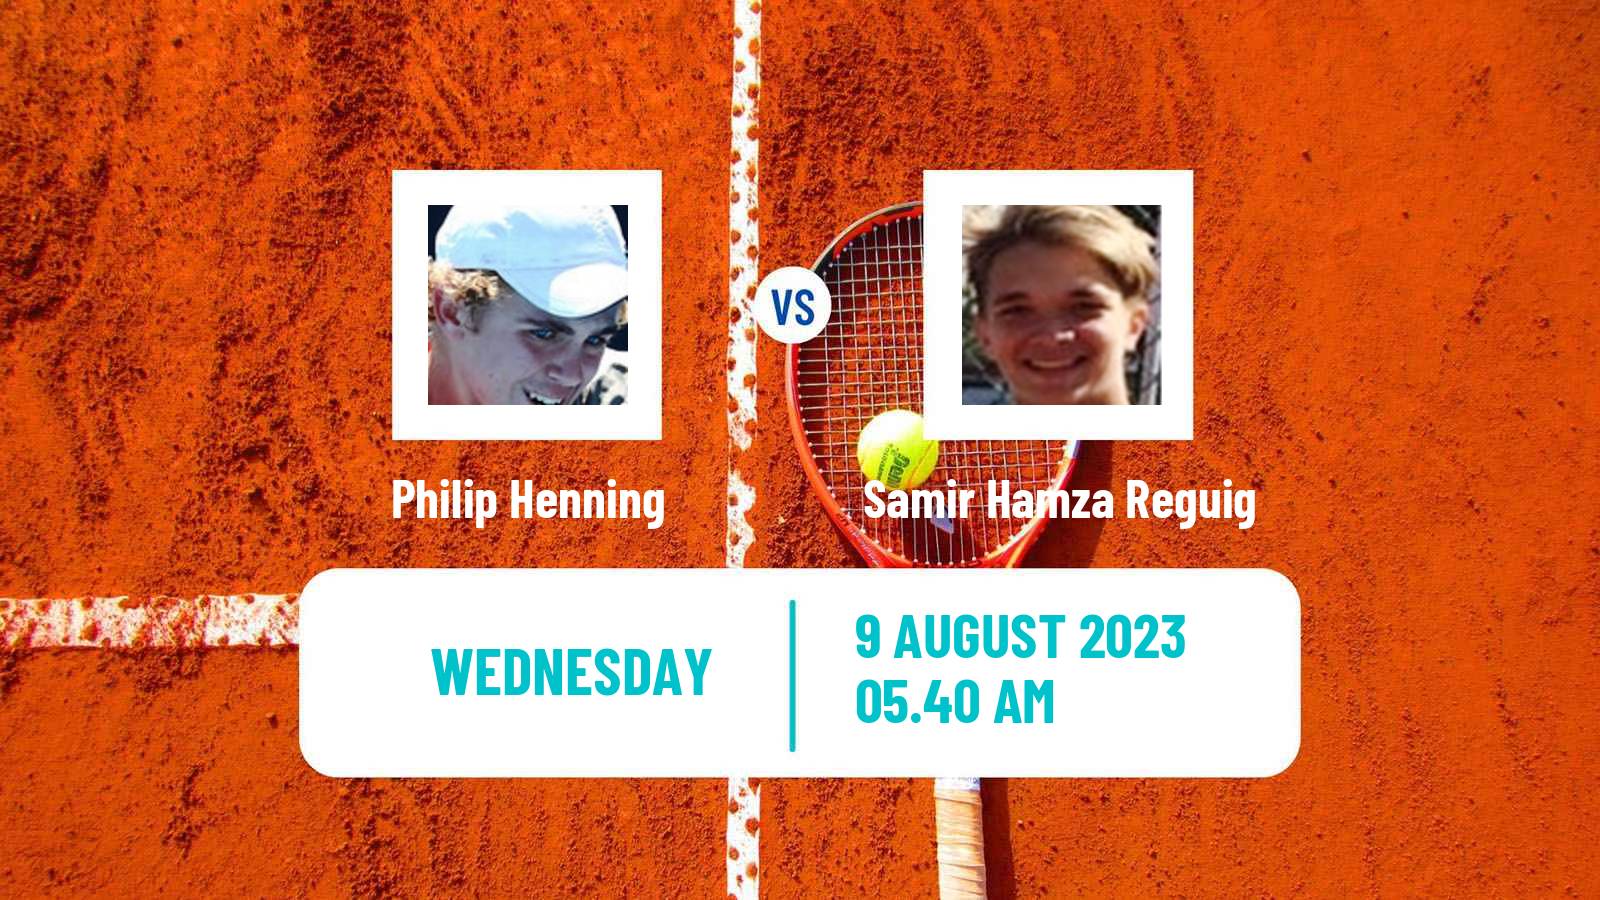 Tennis Davis Cup Group III Philip Henning - Samir Hamza Reguig